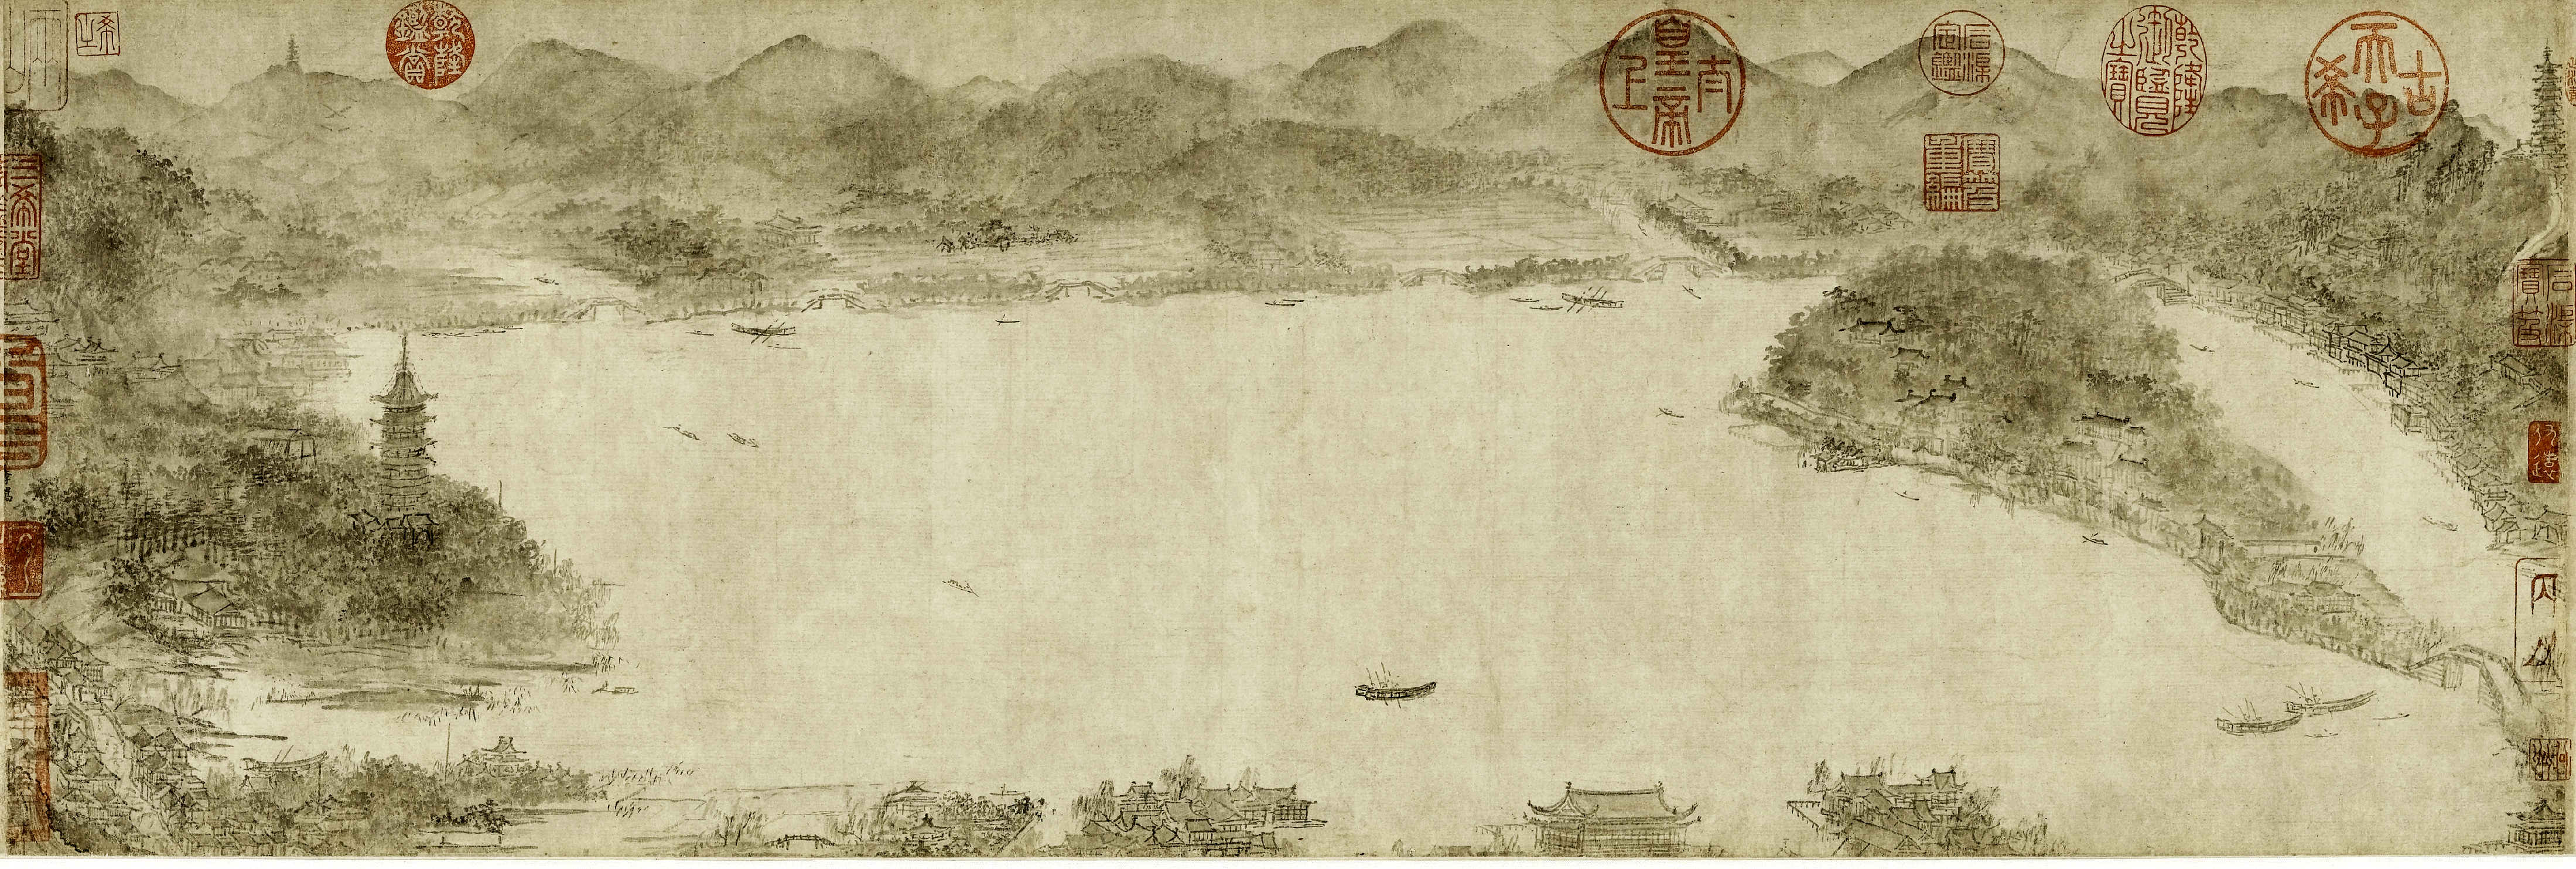 中国絵画史ノート 宋時代 南宋院体画、江南の自然へのまなざし